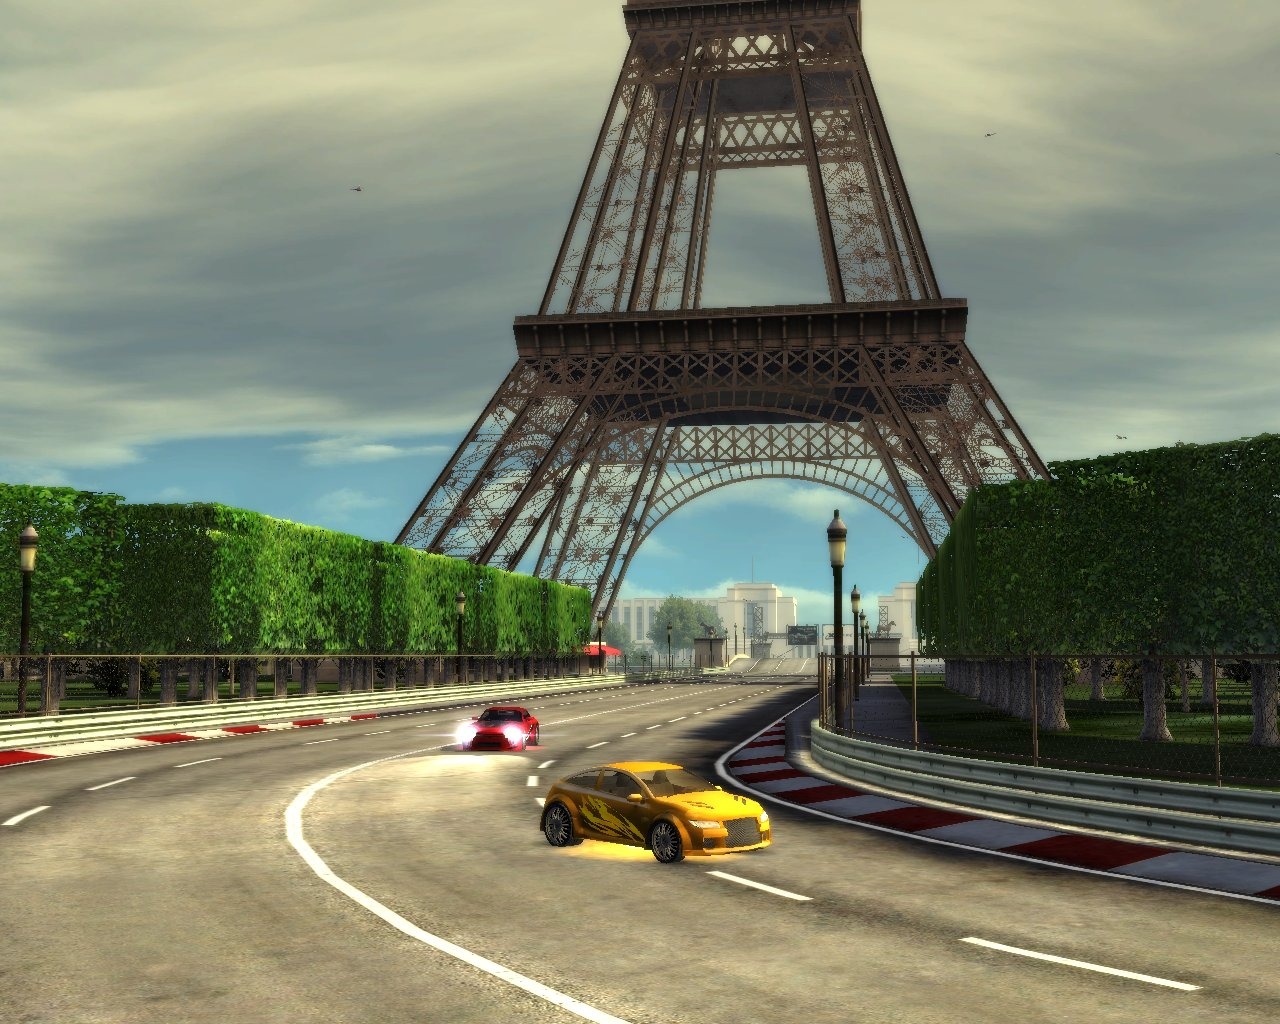 لعبة السيارات الرائعة جداا City Racer بحجم خرافي ميجا مضغوطة وعلي رابط سريع صروووخ